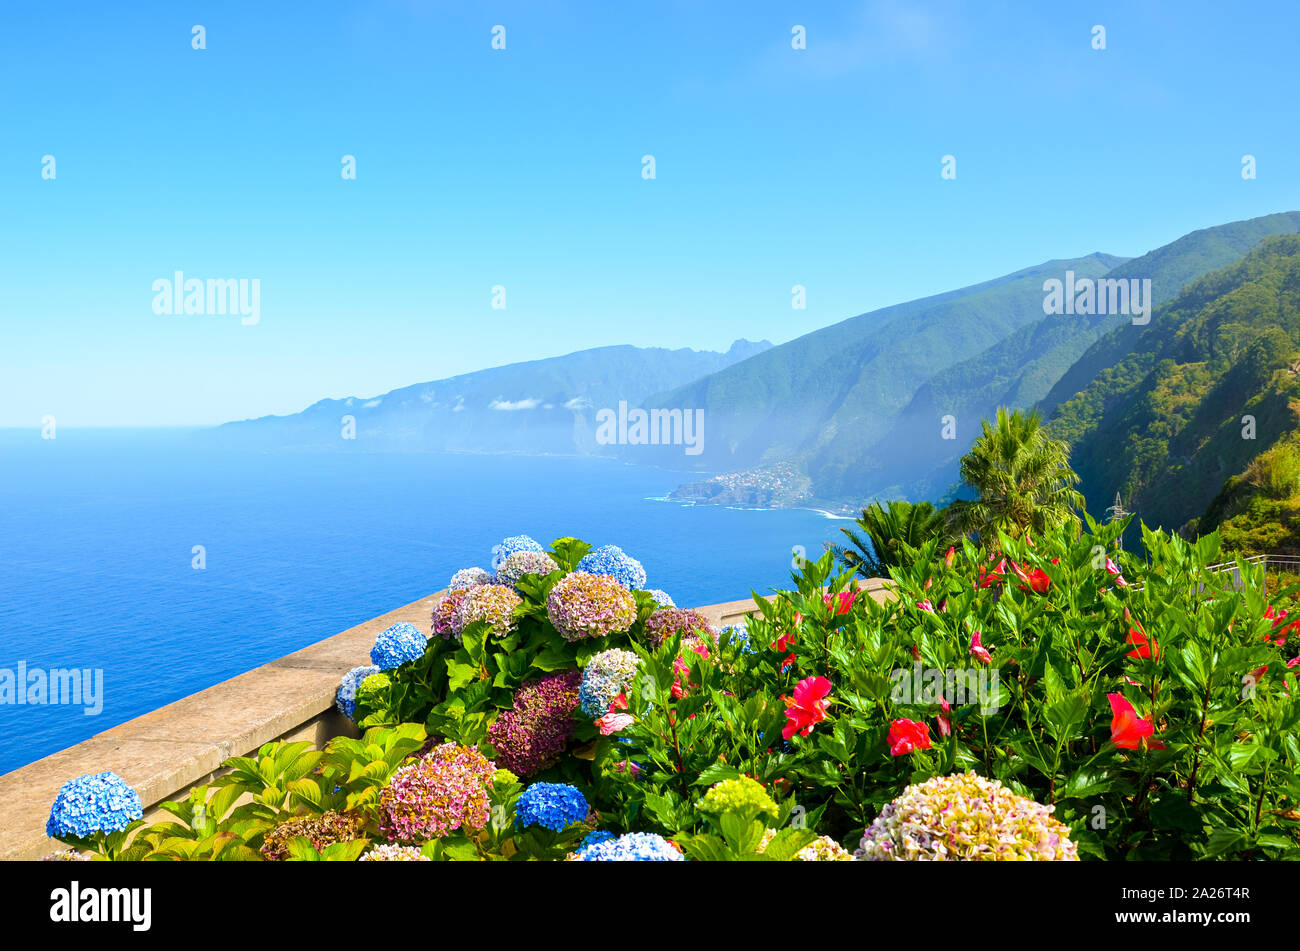 Bunte Blumen und wunderschönen Nordküste der Insel Madeira, Portugal. Typische, Hortensia Hortensie Blumen. Erstaunliche Küste von Ribeira da JANELA. Grüne Landschaft durch den Atlantischen Ozean. Ewiger Frühling. Stockfoto